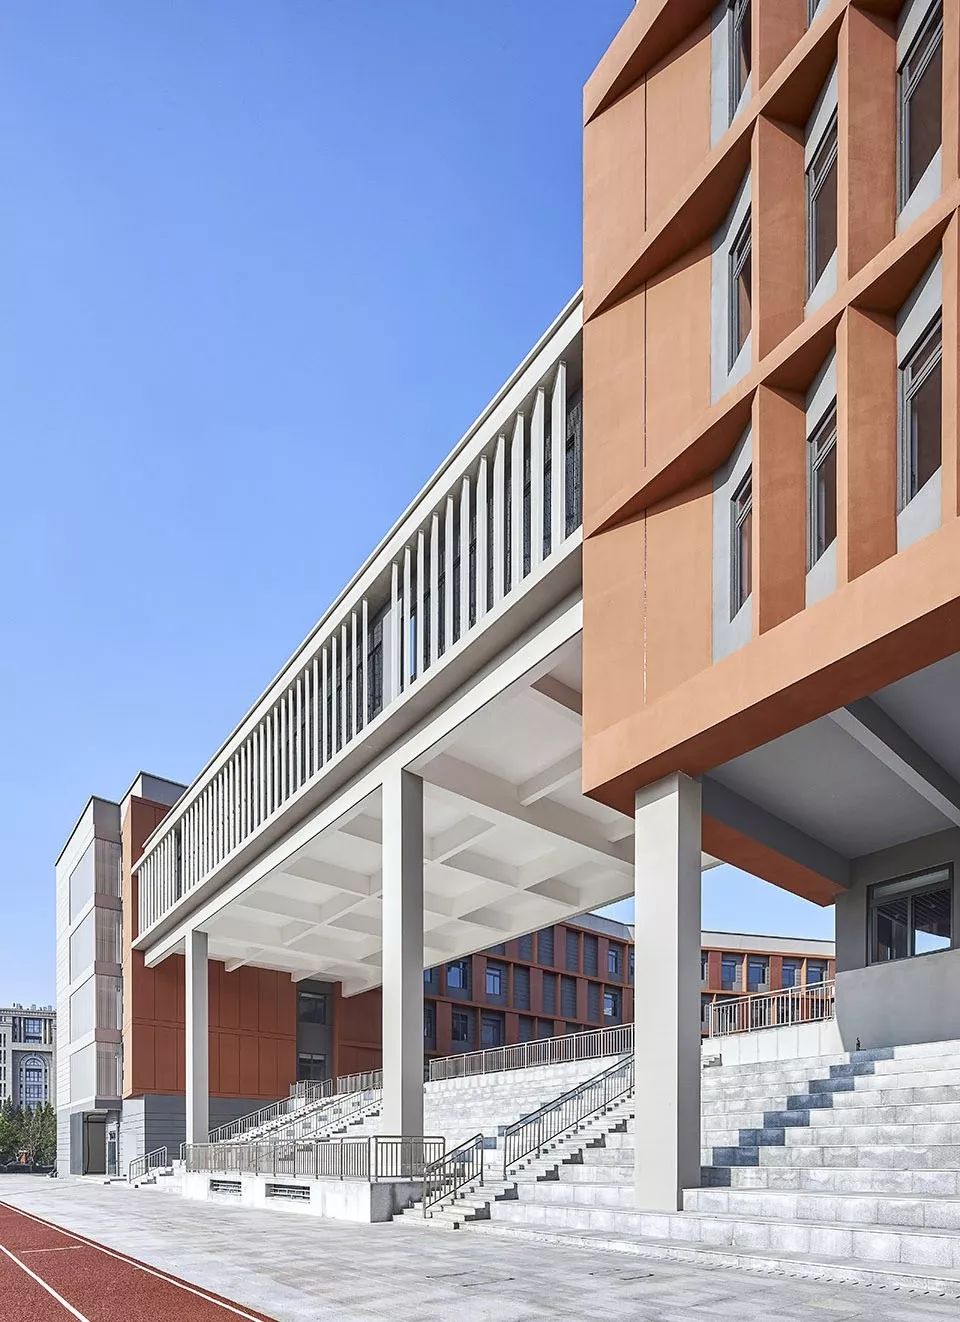 复旦大学新江湾第二附属学校建筑设计/同济大学建筑设计研究院